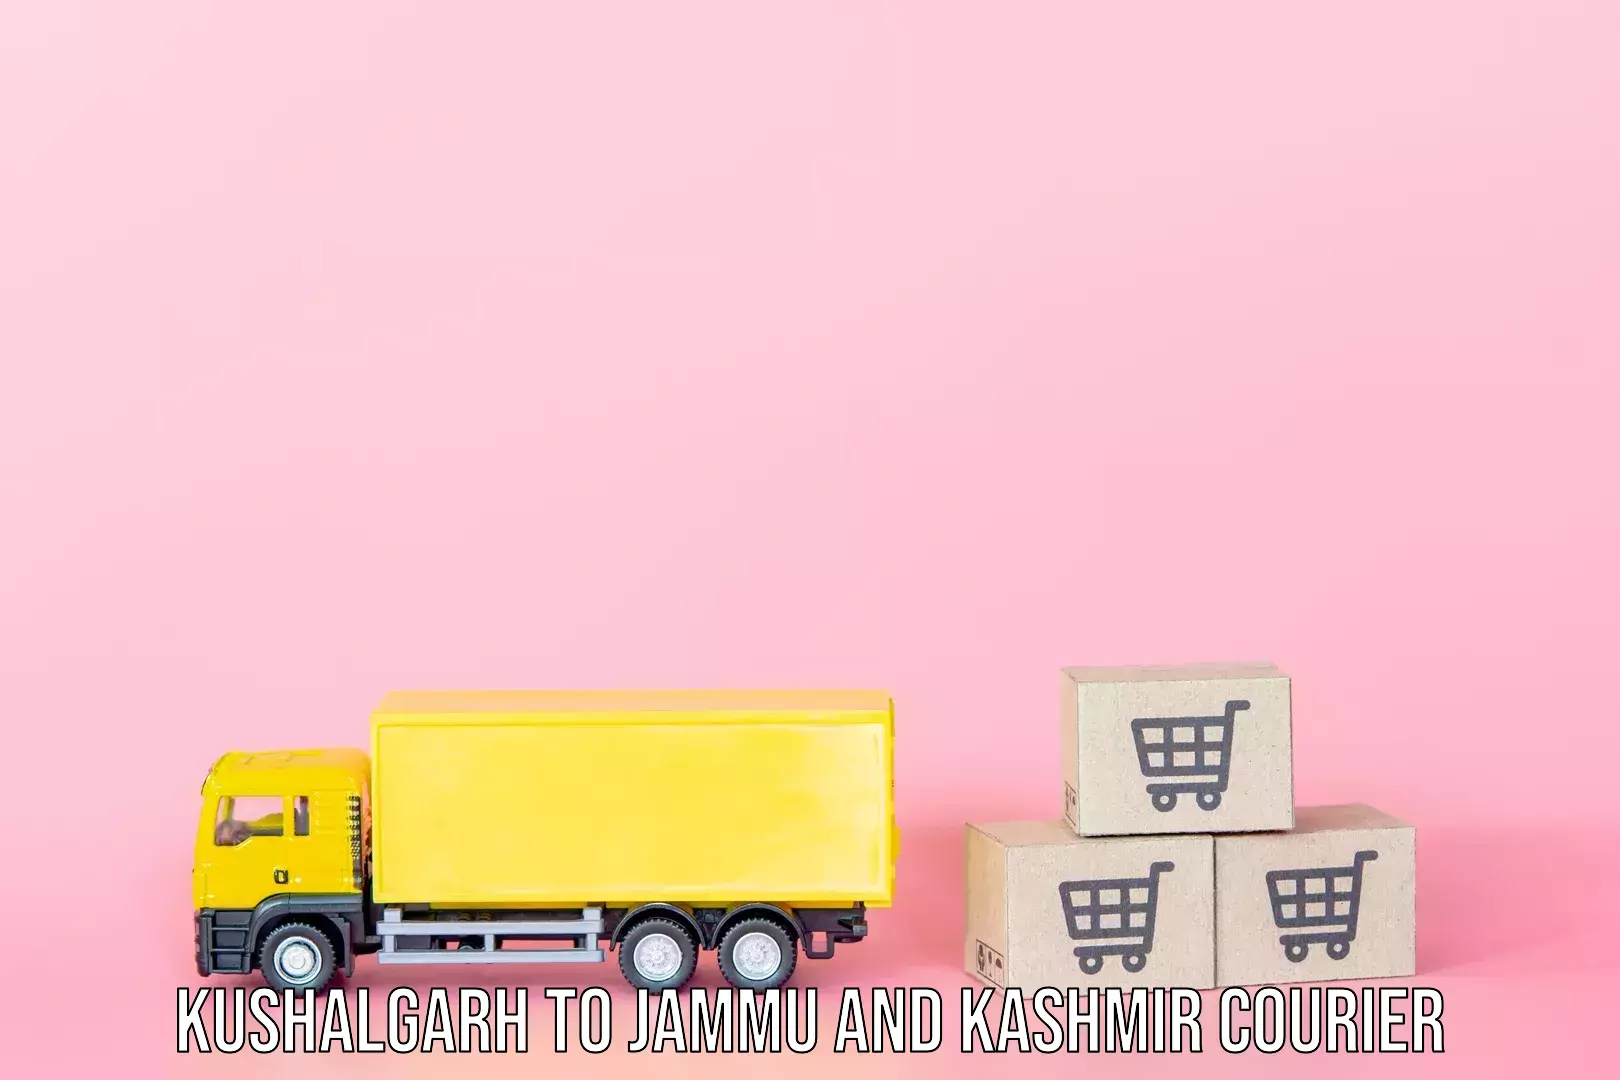 Luggage delivery app Kushalgarh to Leh